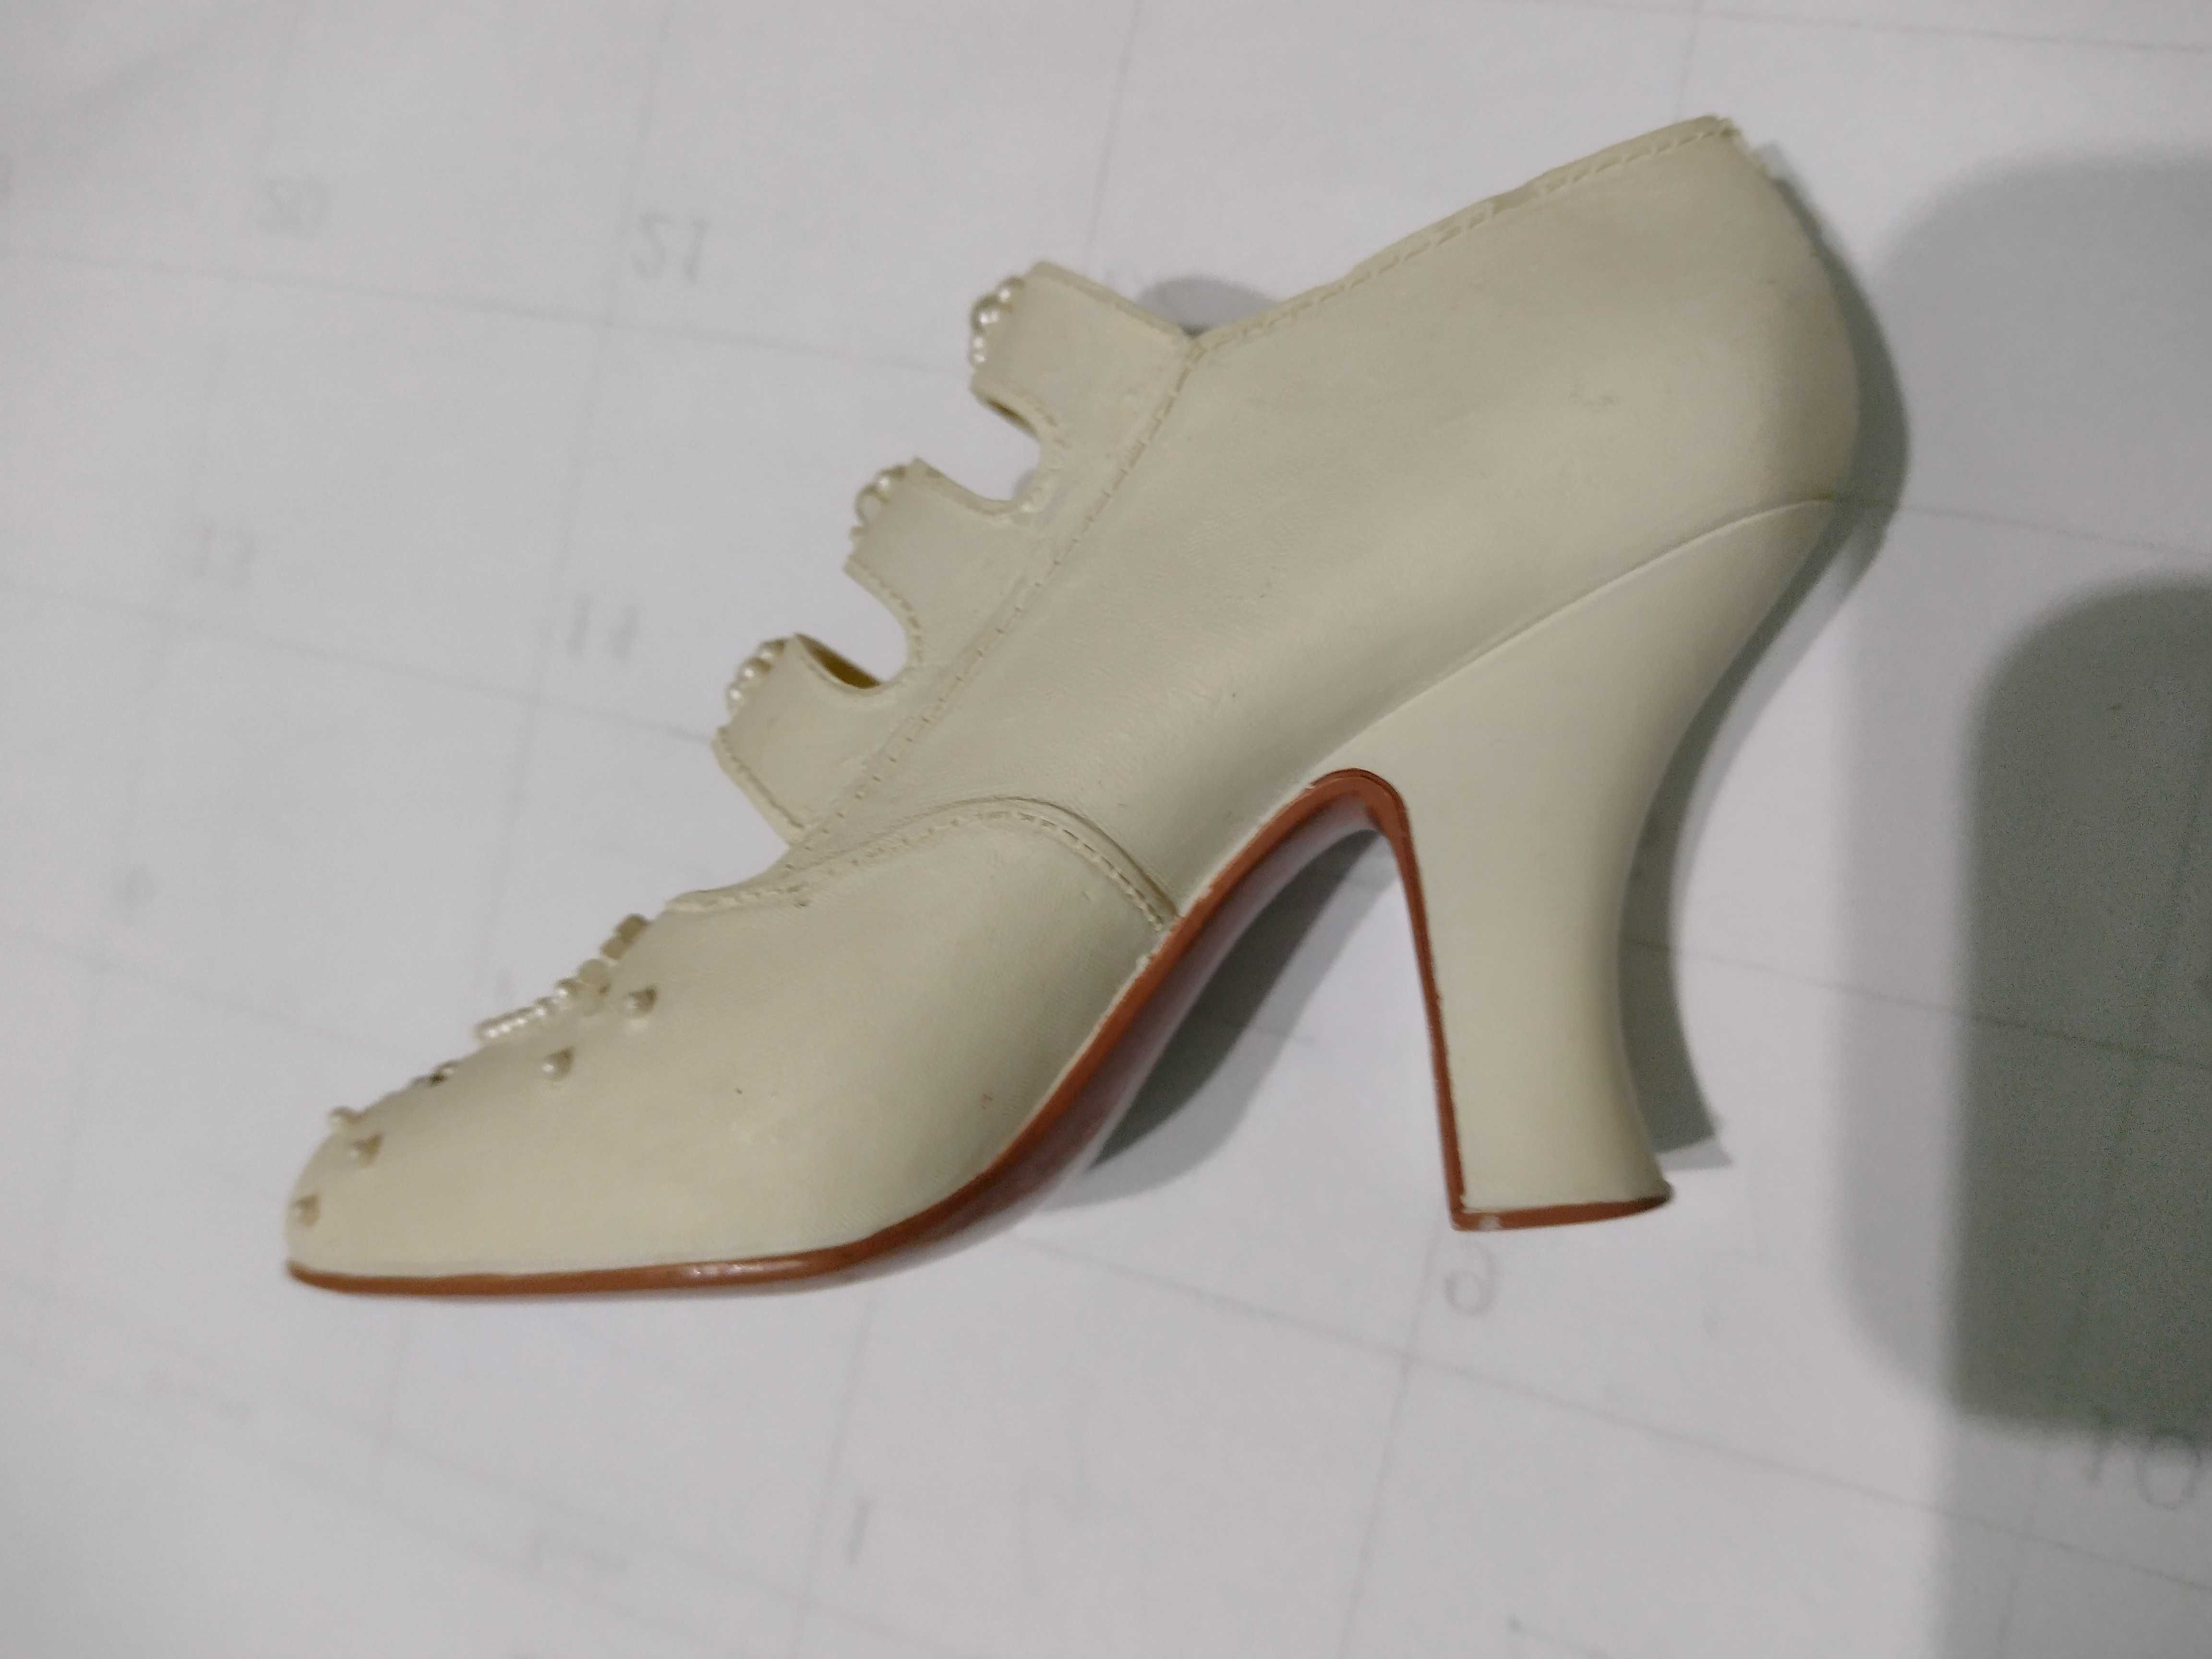 Porcelanowy bucik figurka z serii Just the Right Shoe